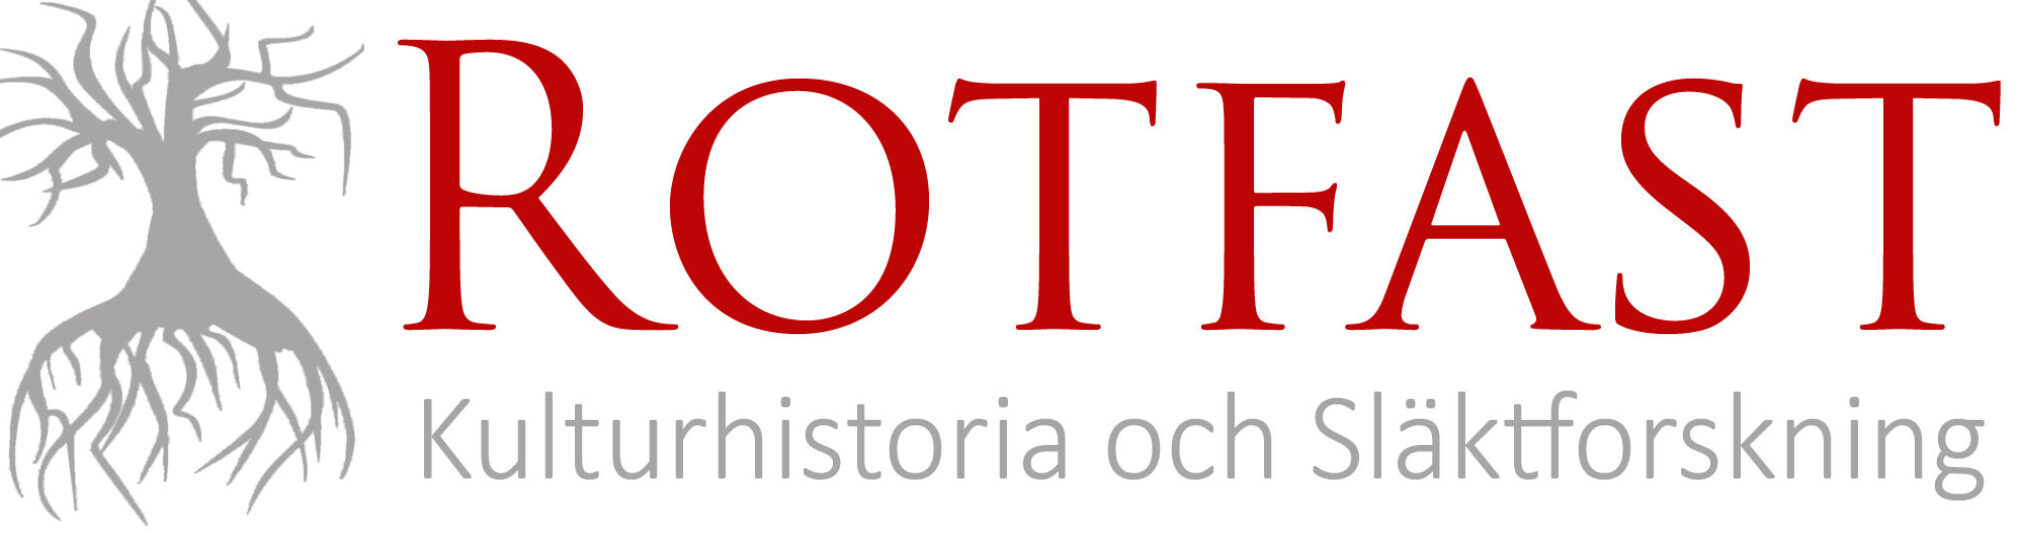 Logo for Rotfast - Släkforskning och kulturhistoria